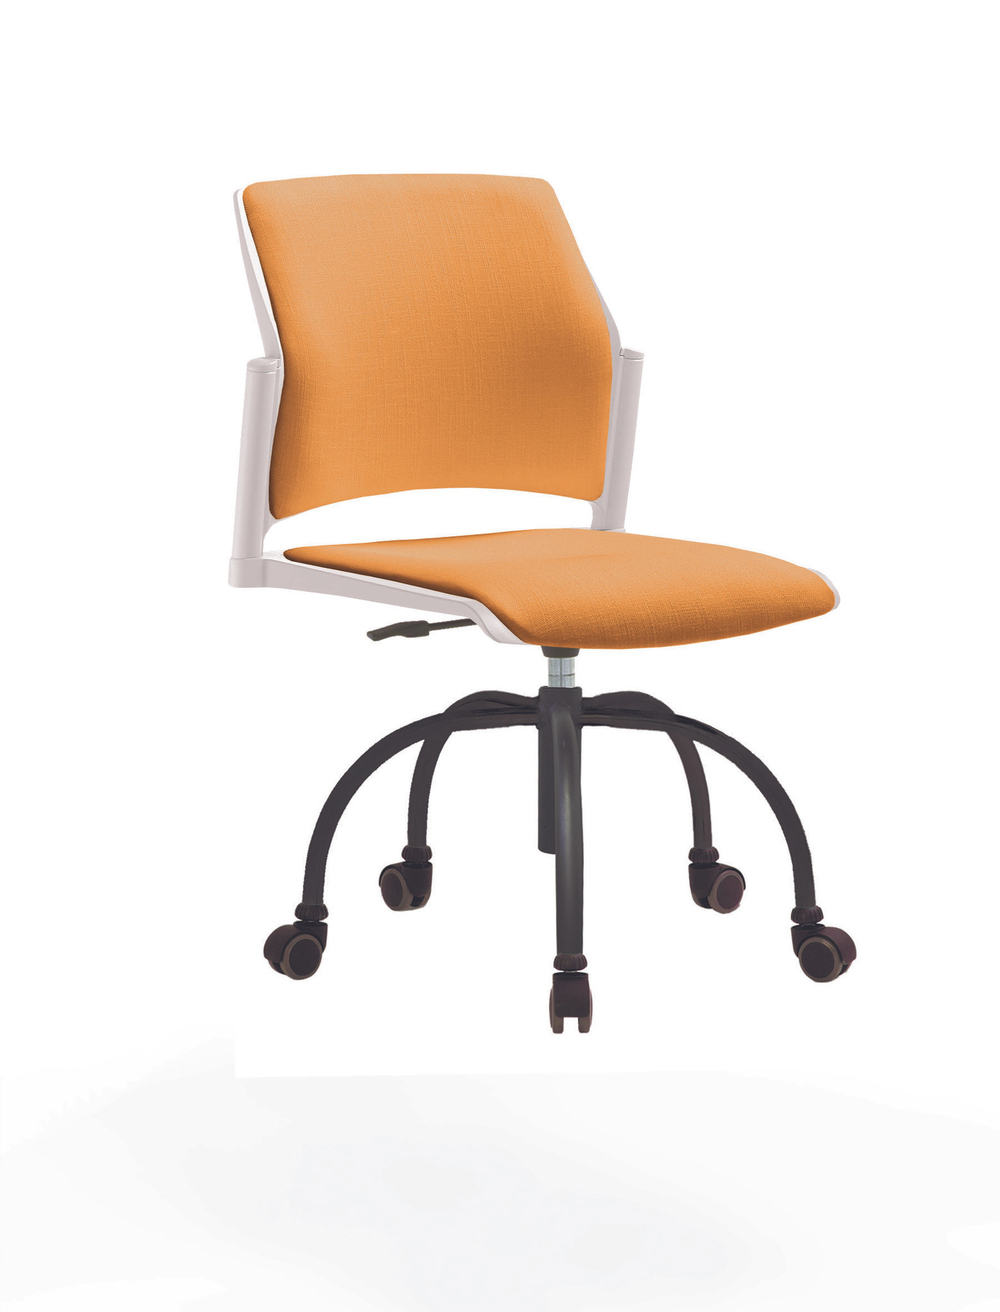 Кресло Rewind каркас черный, пластик белый, база паук краска черная, без подлокотников, сиденье и спинка оранжевые